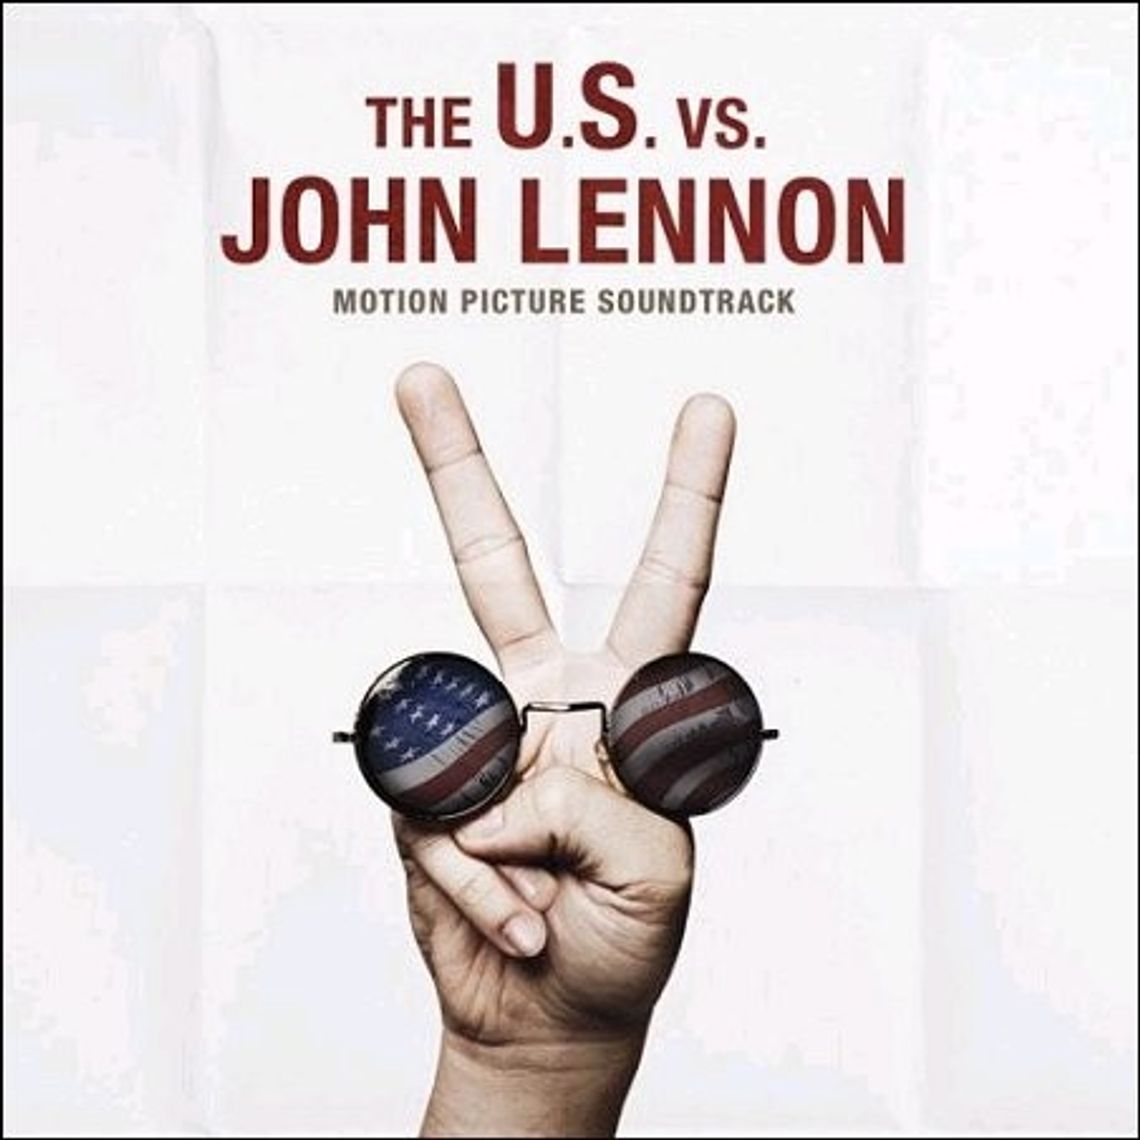 W rocznicę śmierci Johna Lennona